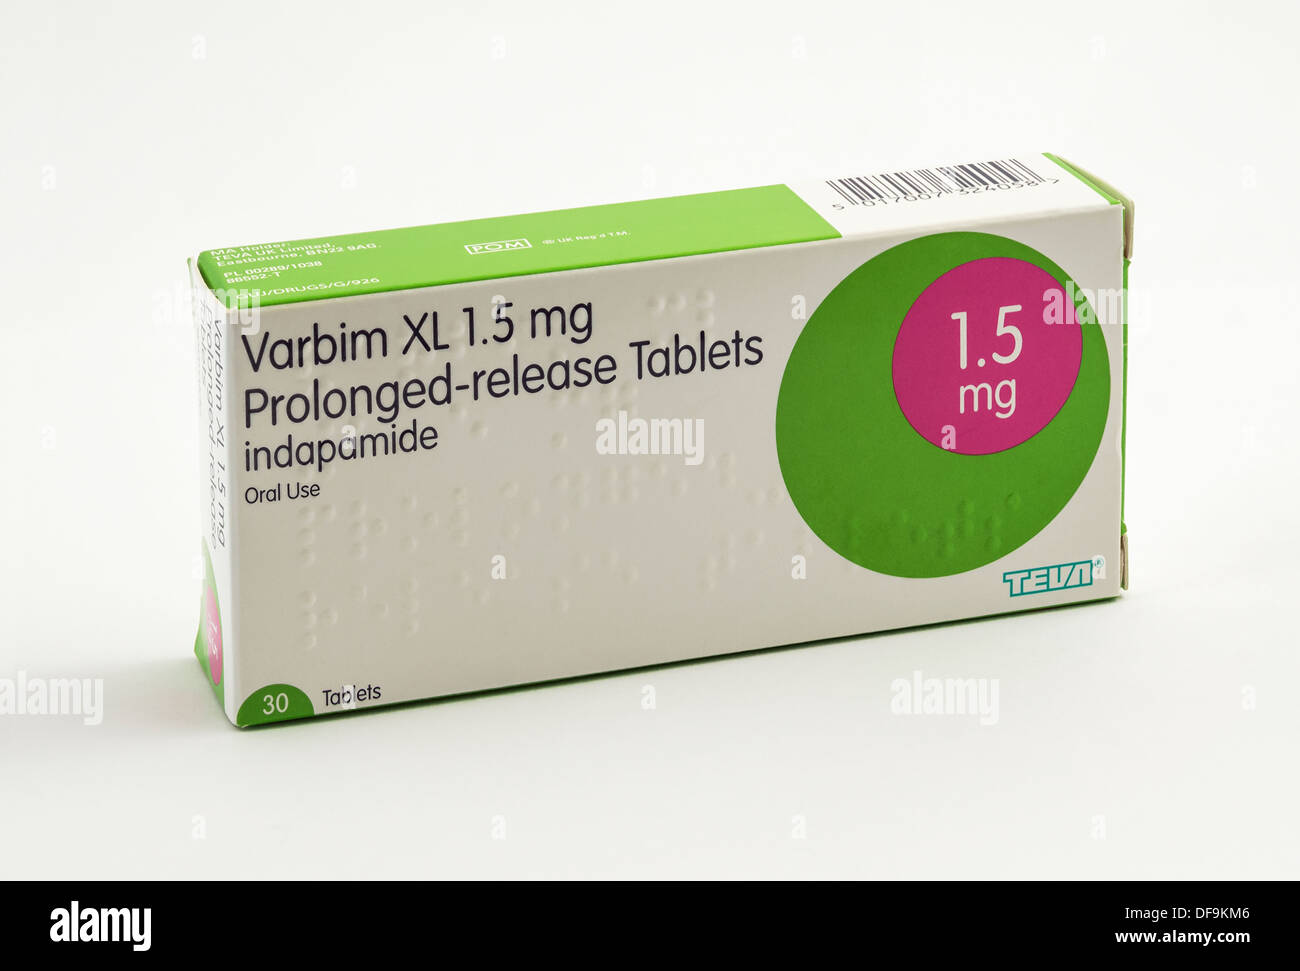 Indapamid gezeigt hier unter dem Handelsnamen Varbim XL verlängerte  Freisetzung Tabletten. Dies ist ein Diuretikum zur Behandlung von  Bluthochdruck eingesetzt Stockfotografie - Alamy